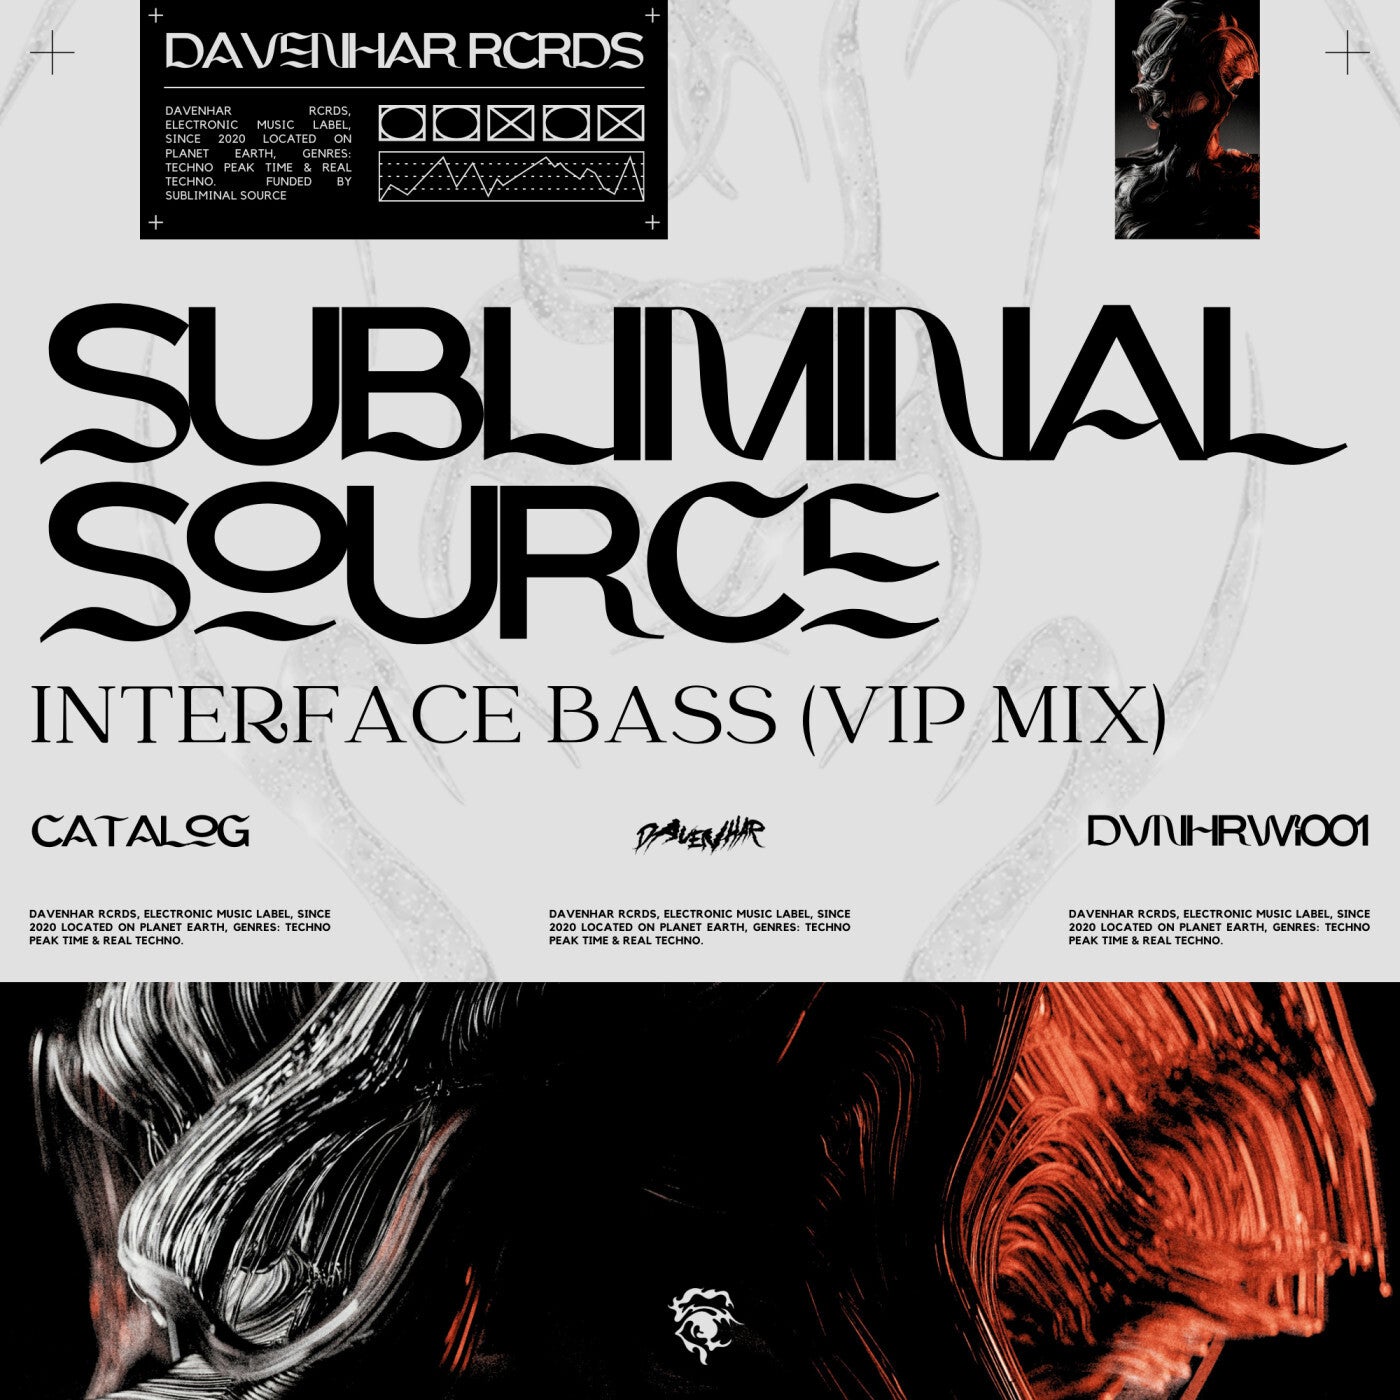 Interface Bass (Vip Mix)